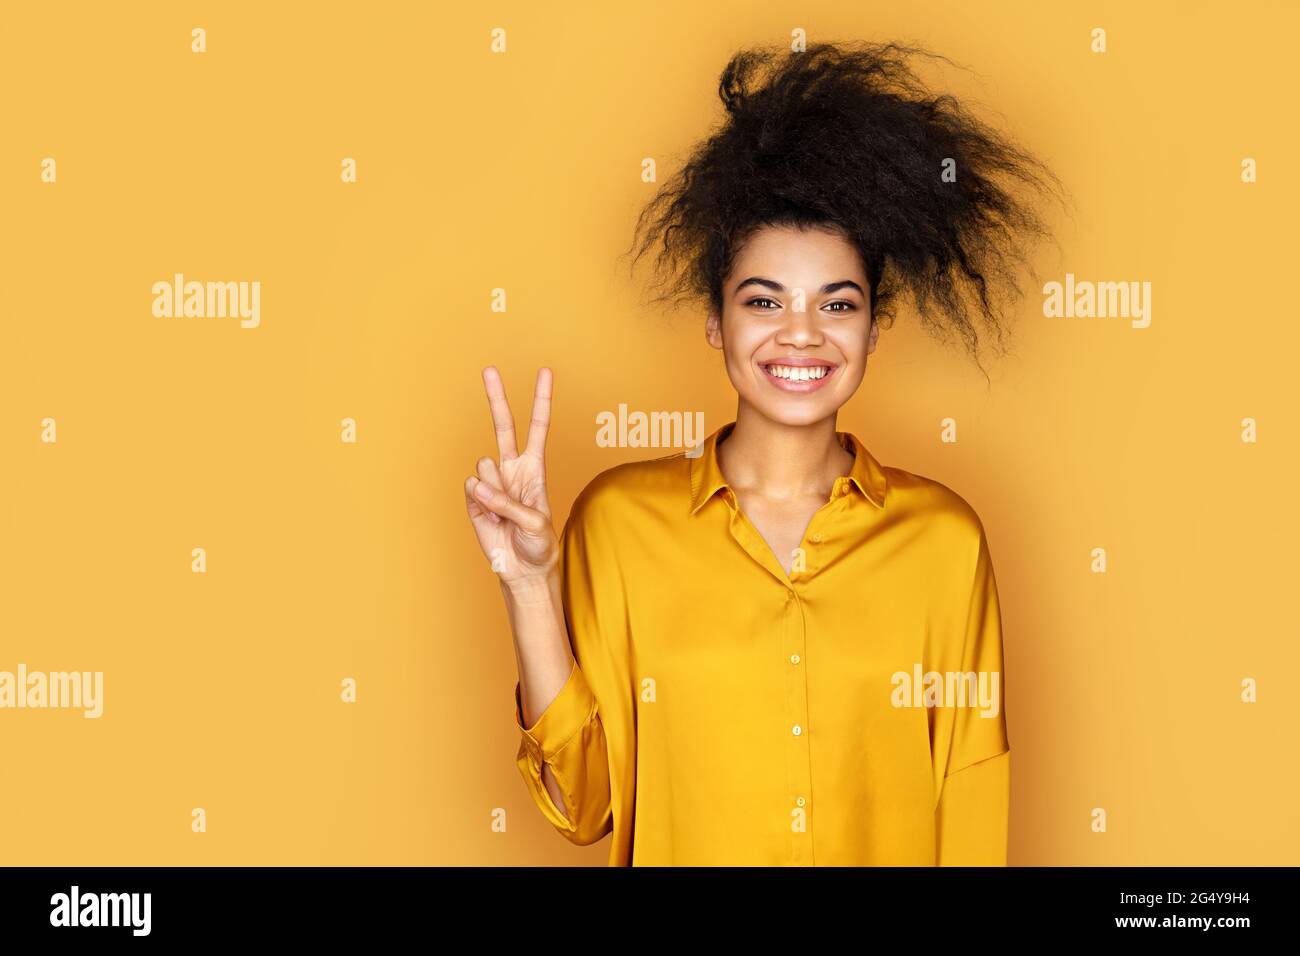 Lächelndes Mädchen, das ein Friedenszeichen oder eine V-Geste mit den Fingern zeigt. Foto von afroamerikanischen Mädchen auf gelbem Hintergrund Stockfoto